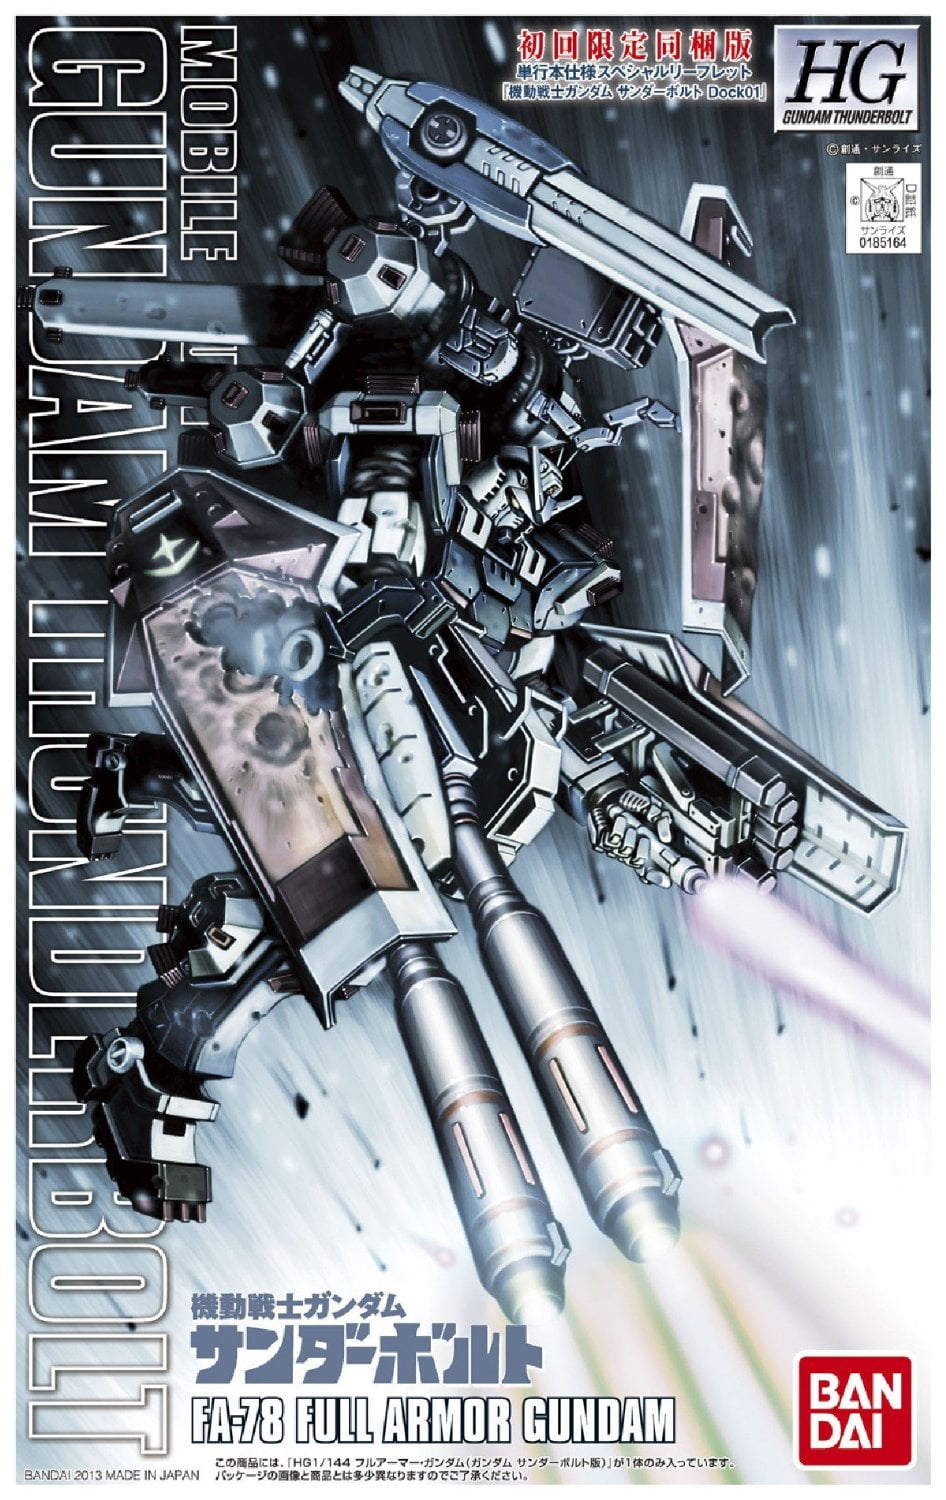 GUNDAM Thunderbolt Ver. HG Mobile Suit Gundam Thunderbolt Full Armor Gundam 1/